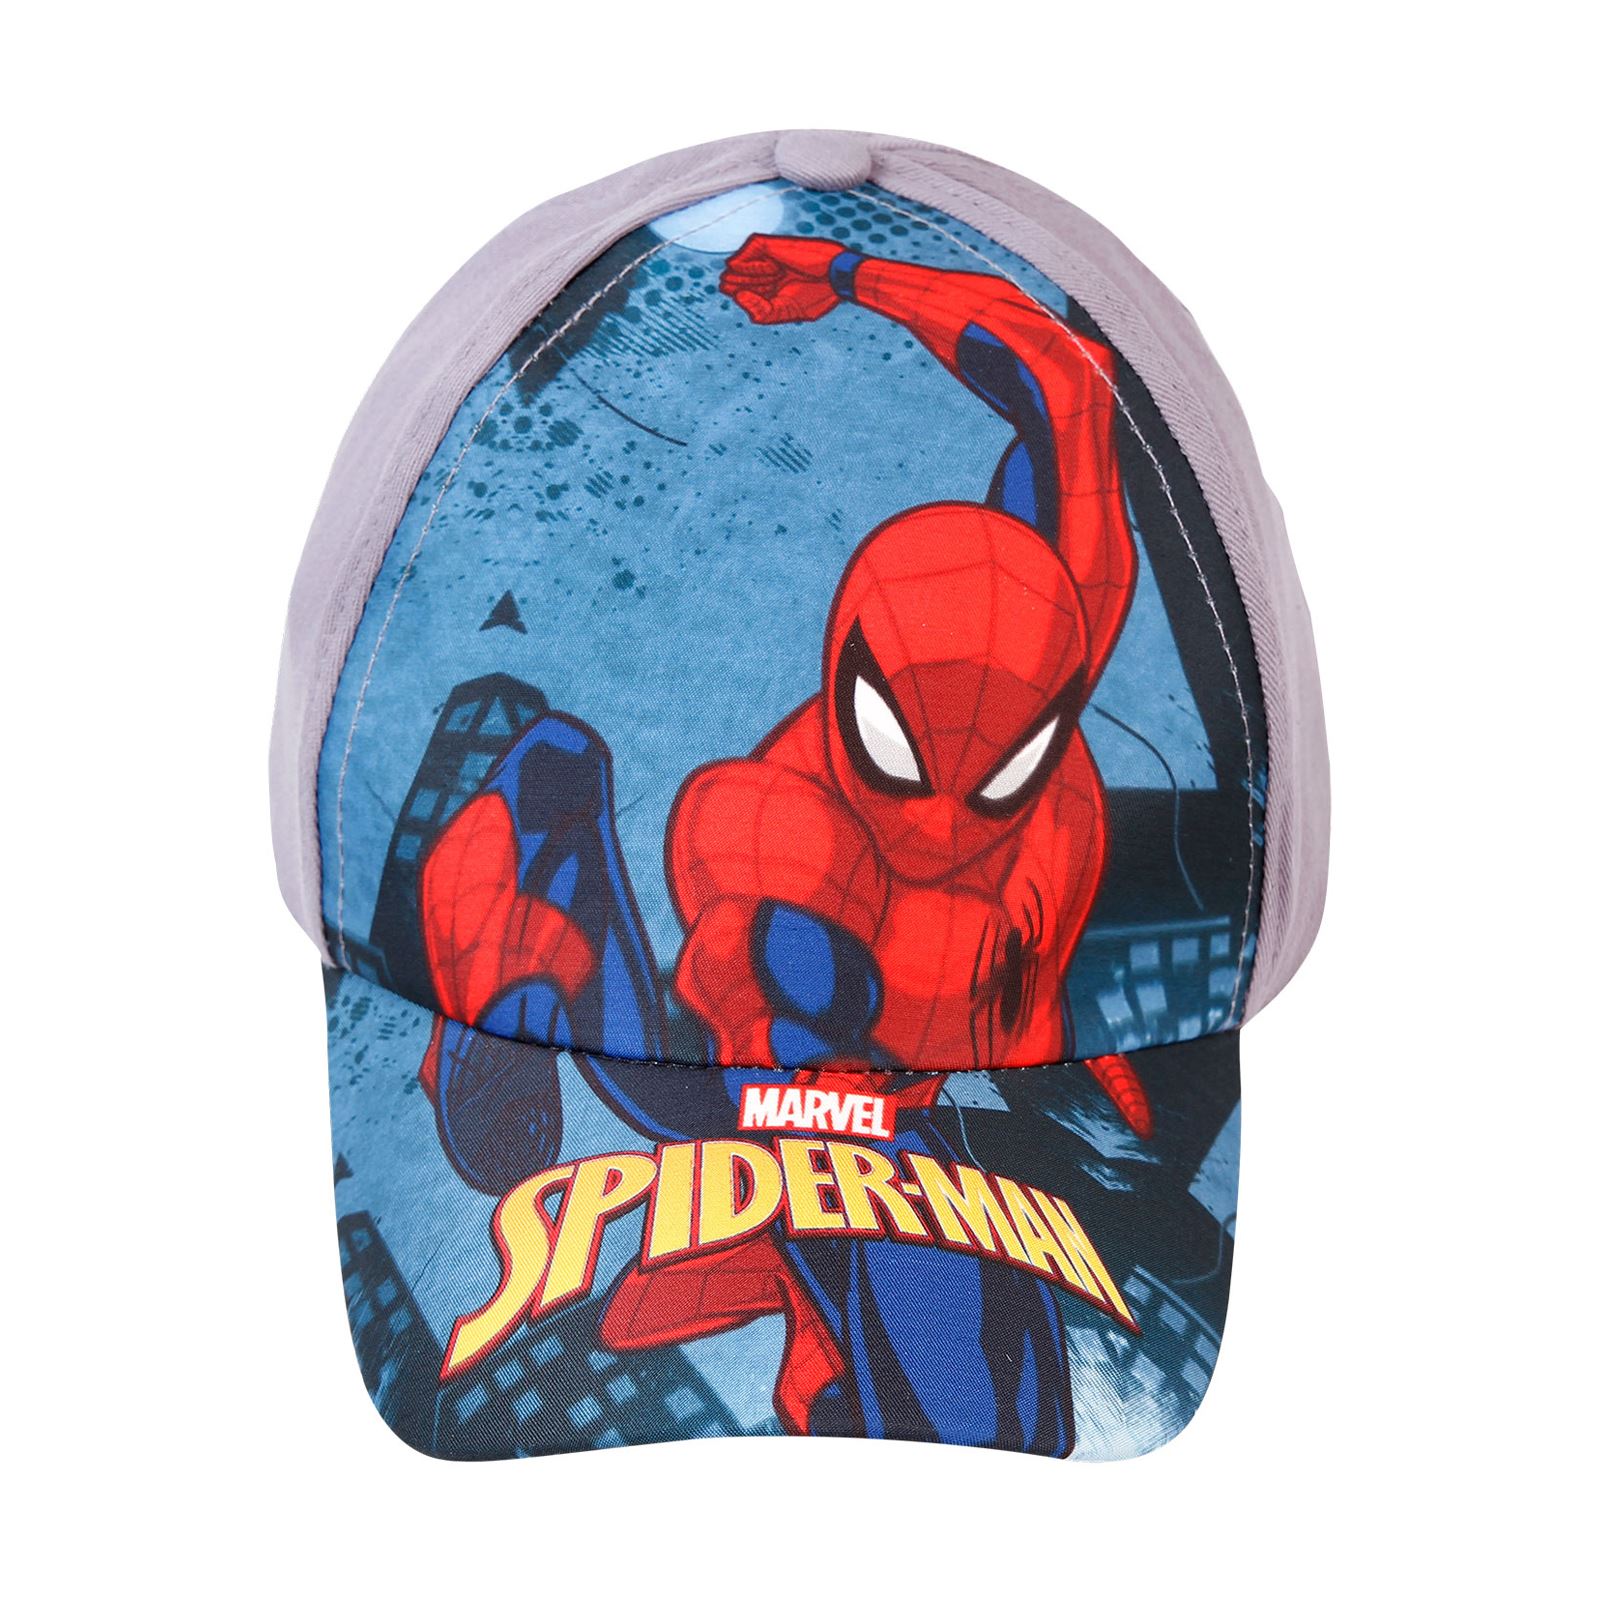 Spiderman Erkek Çocuk Şapka 4-8 Yaş Gri